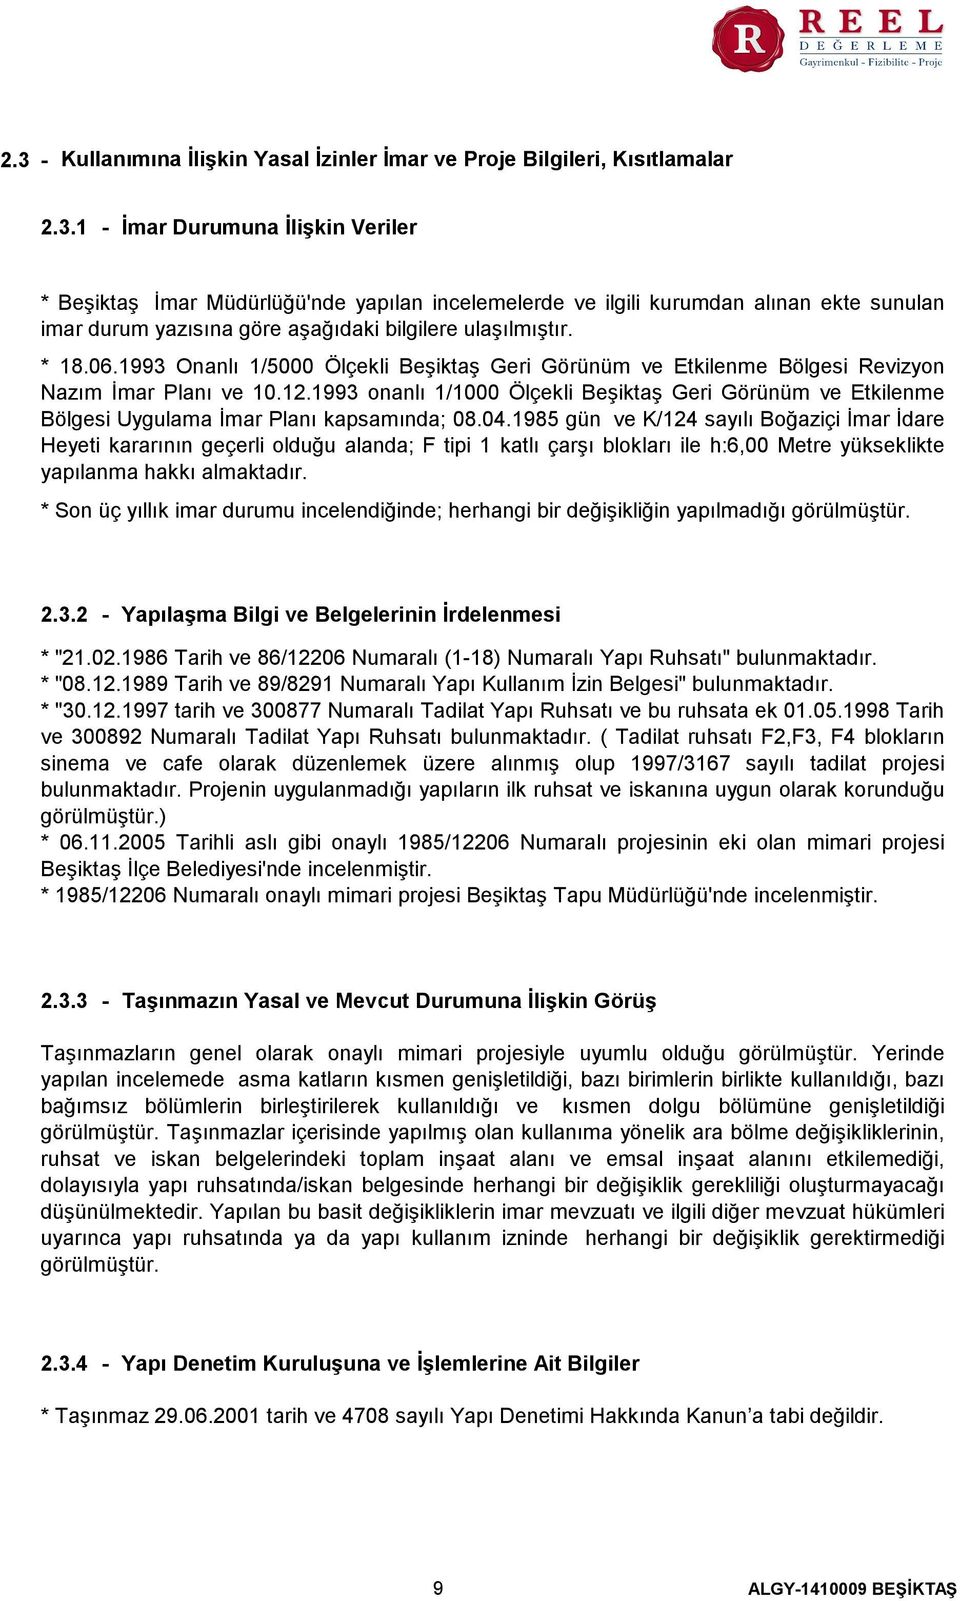 1993 onanlı 1/1000 Ölçekli Beşiktaş Geri Görünüm ve Etkilenme Bölgesi Uygulama İmar Planı kapsamında; 08.04.